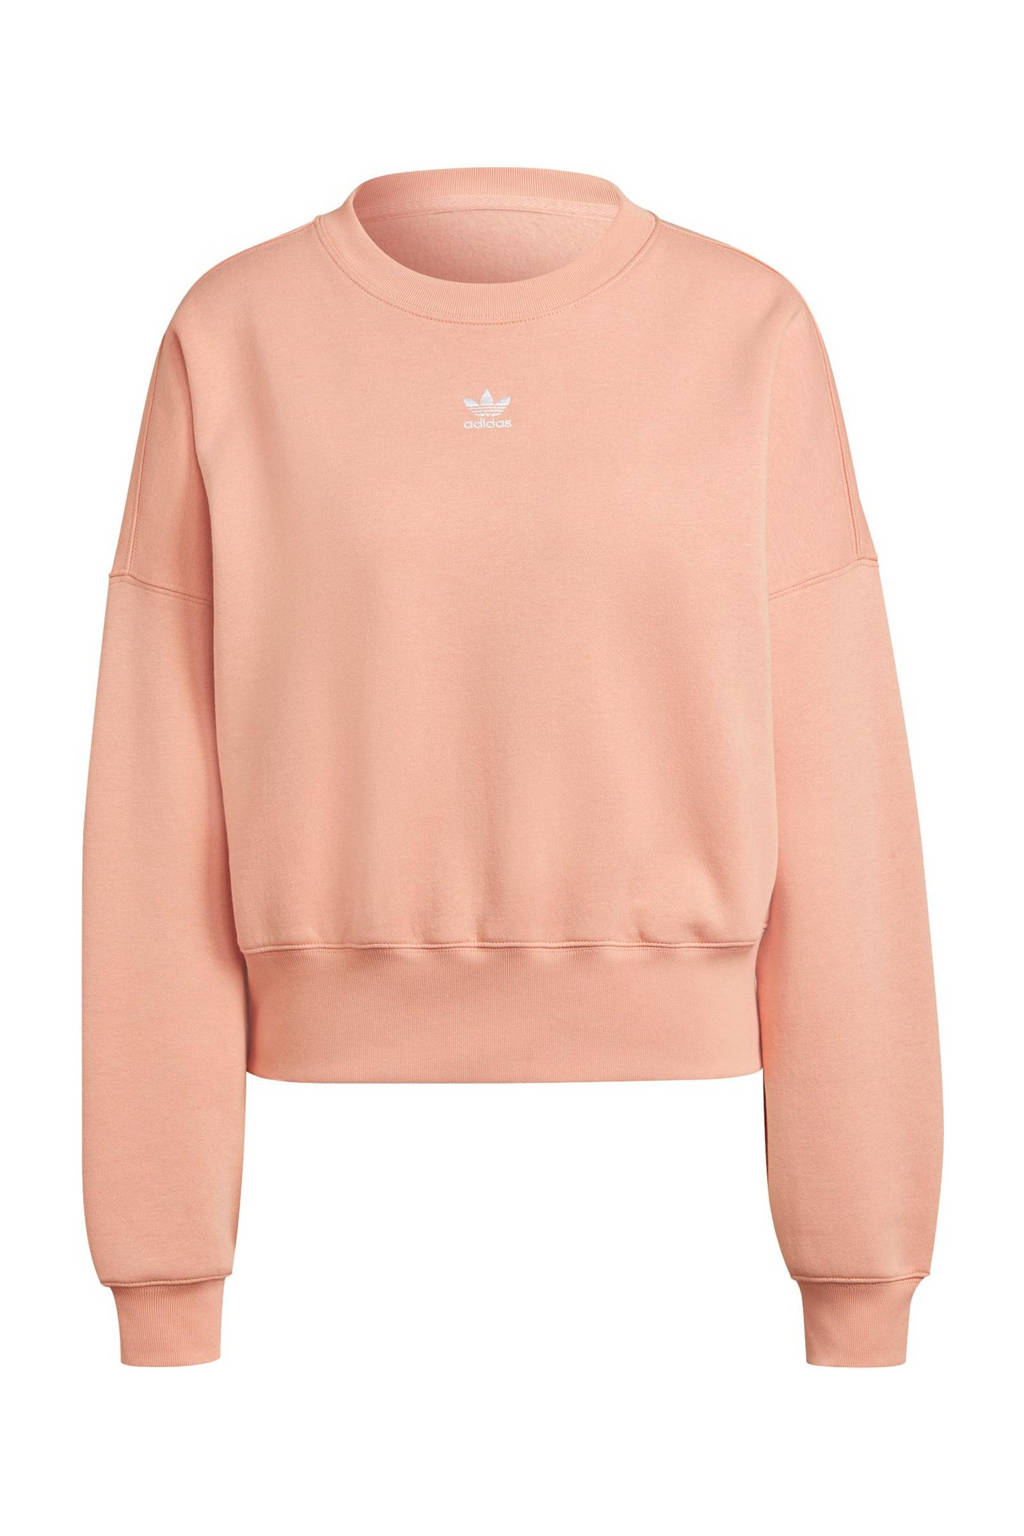 adidas Originals Adicolor fleece sweater roze, Roze